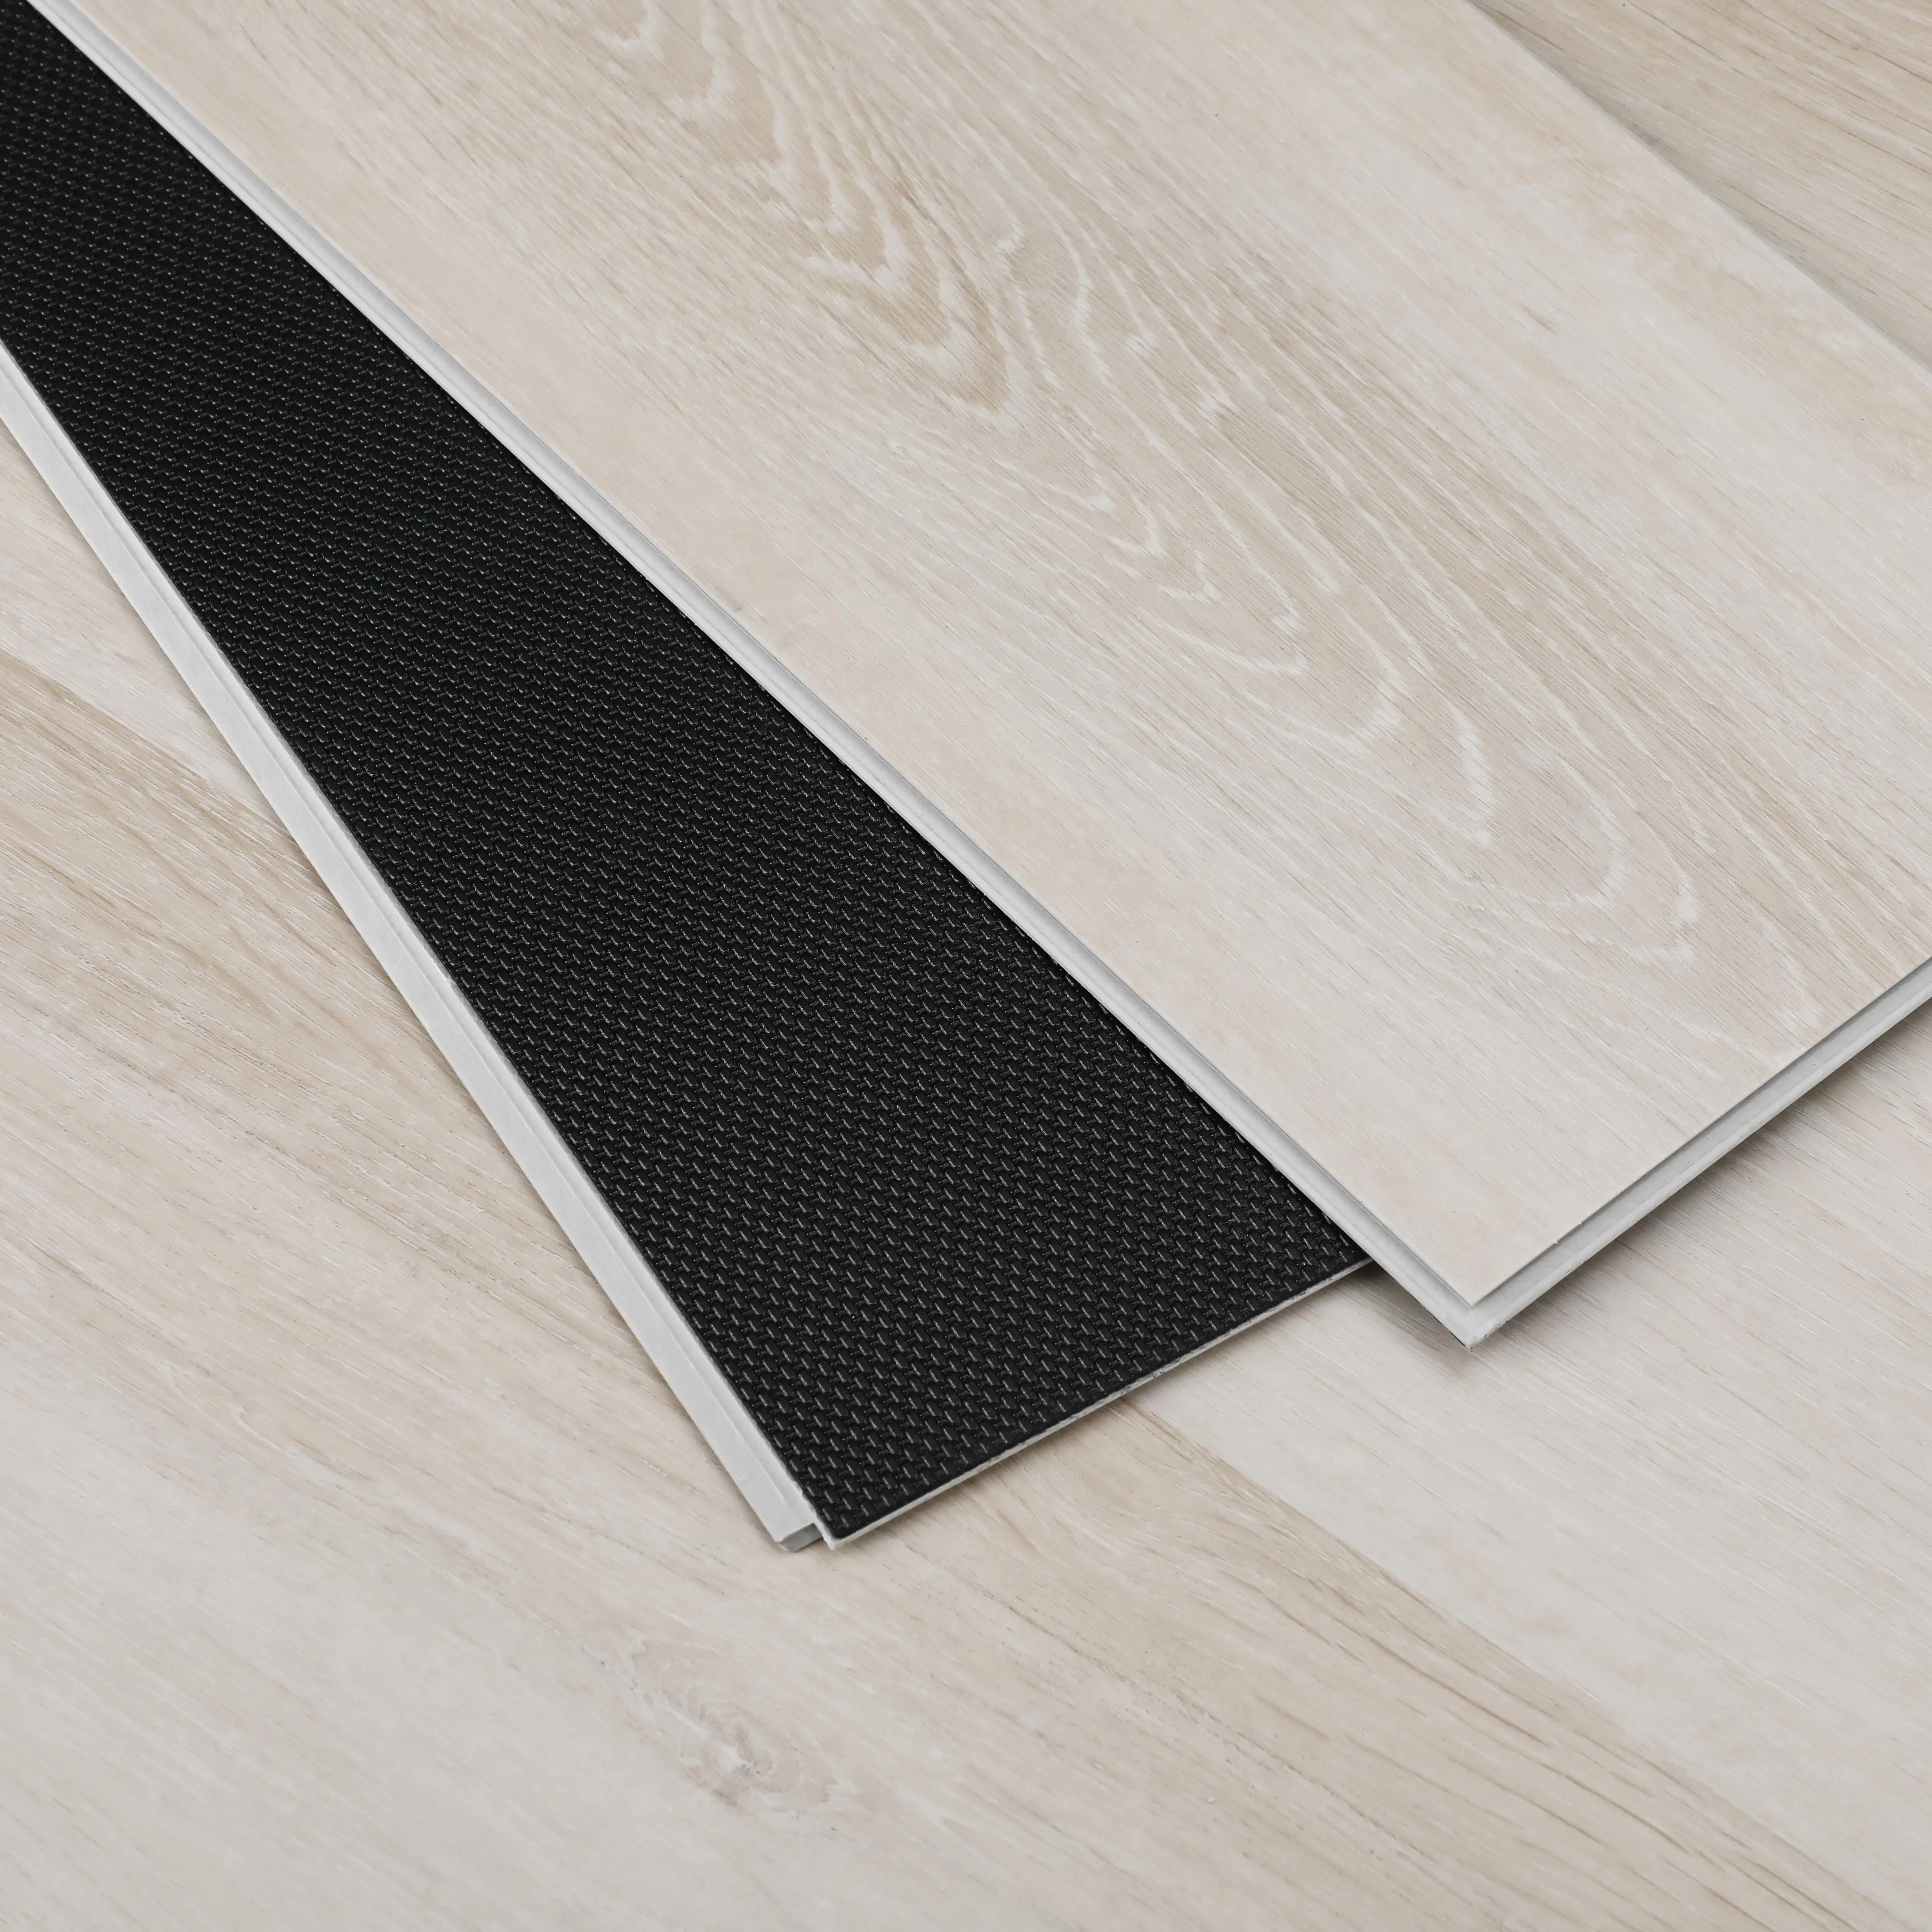 Toonaangevende Fabricagetechnologie Stenen Kunststof Composiet Vinylplankvloeren Spc-Klikvloeren